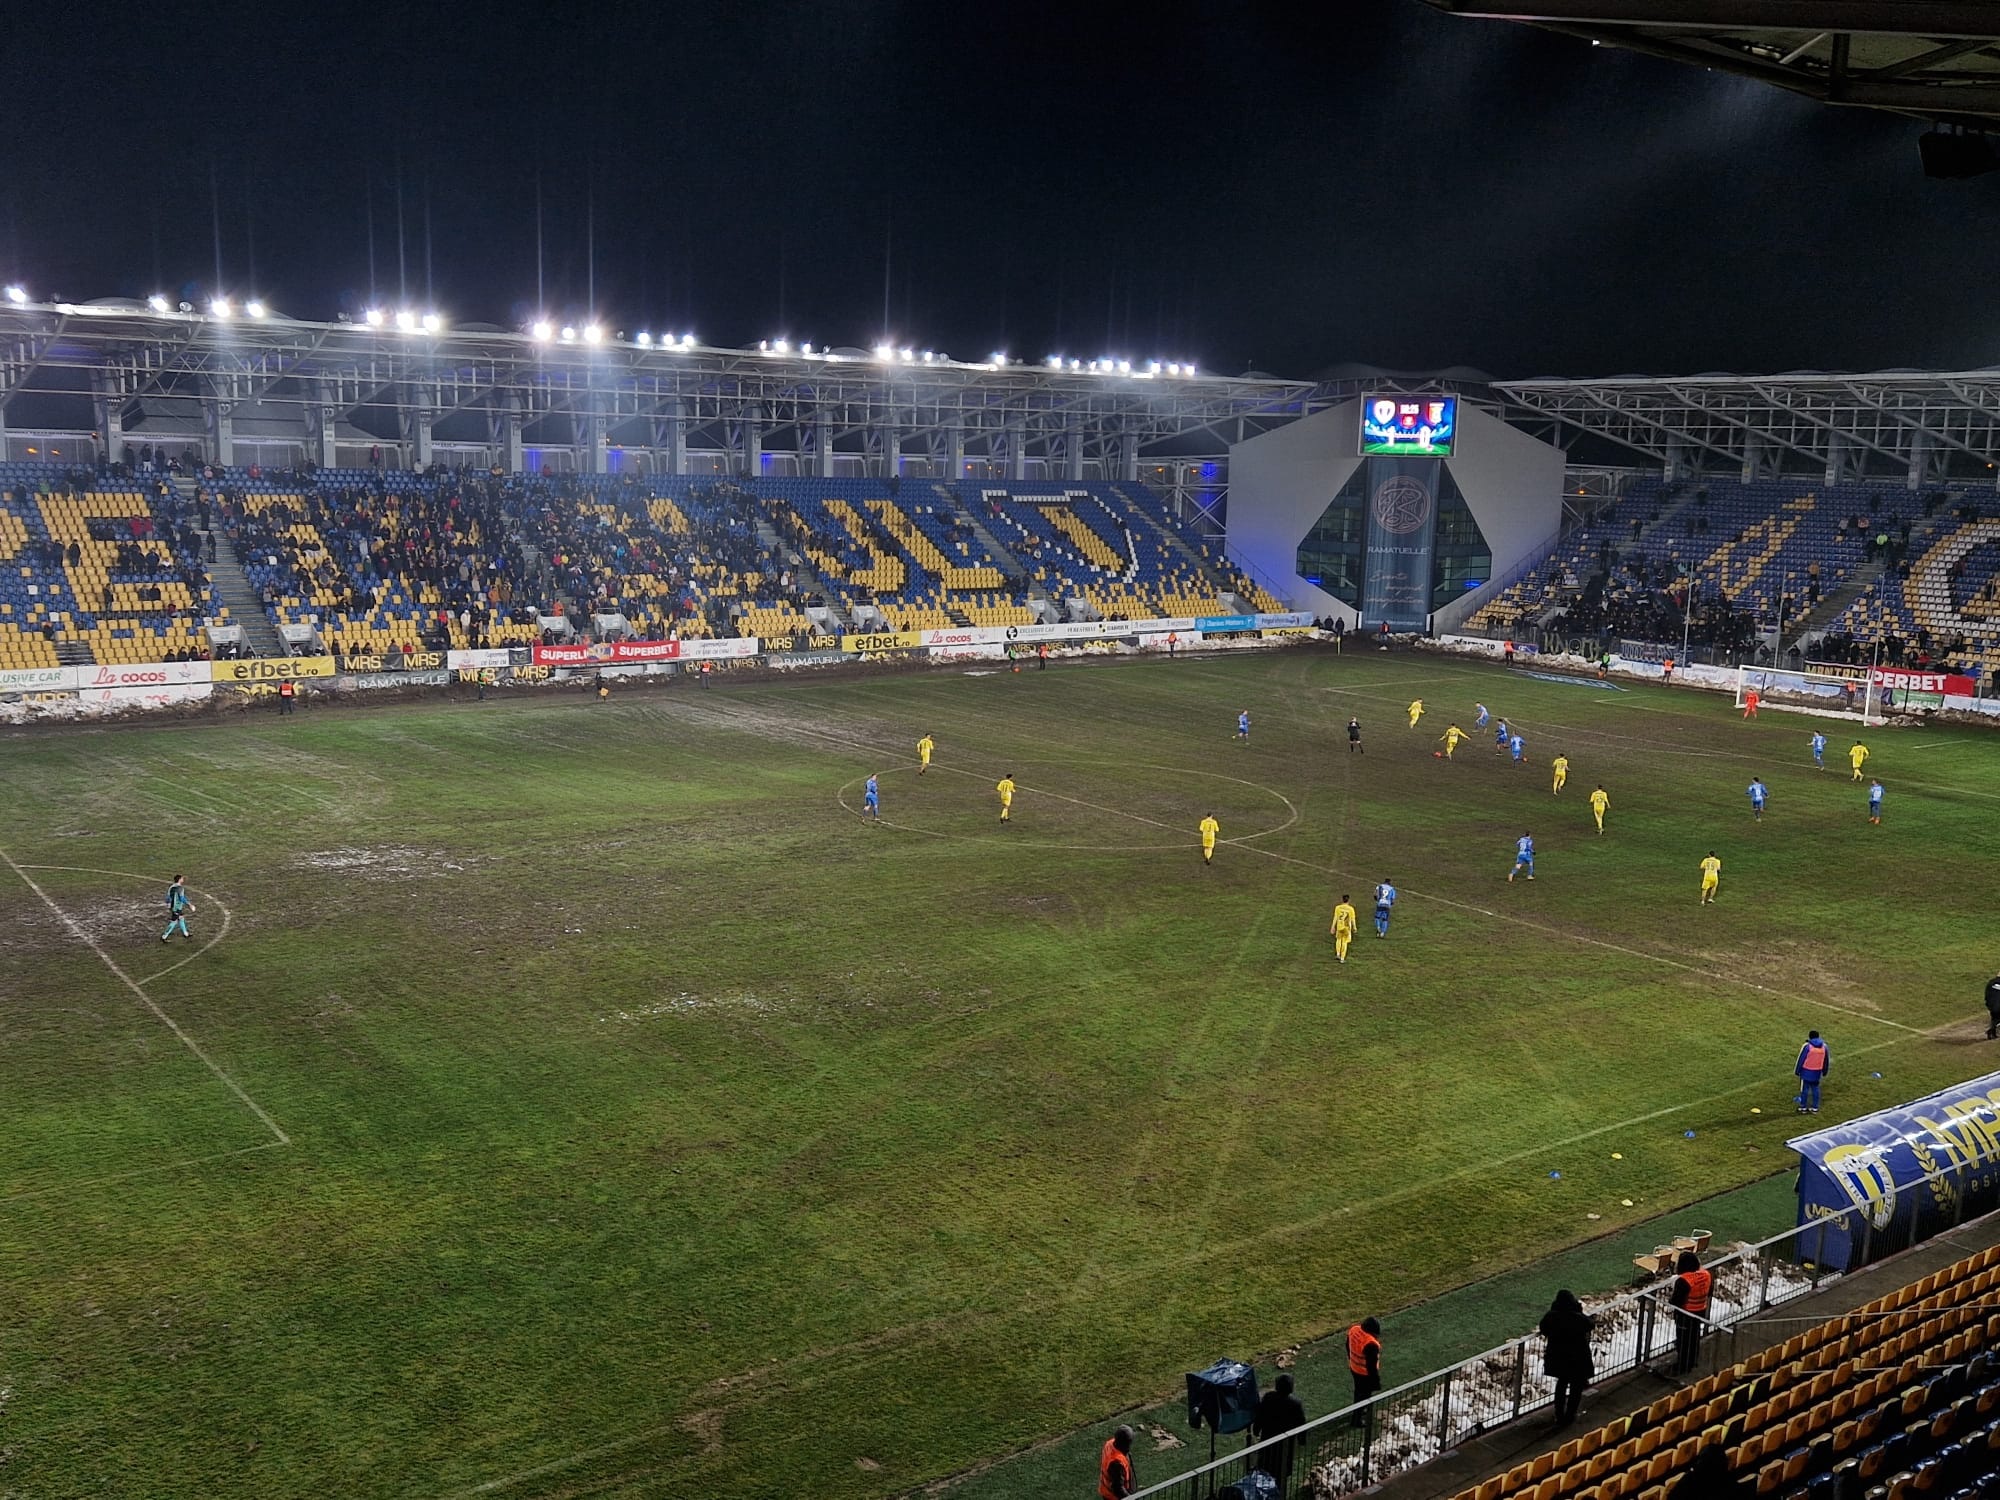 Imagini teribile de pe stadionul Ilie Oană din Ploieşti